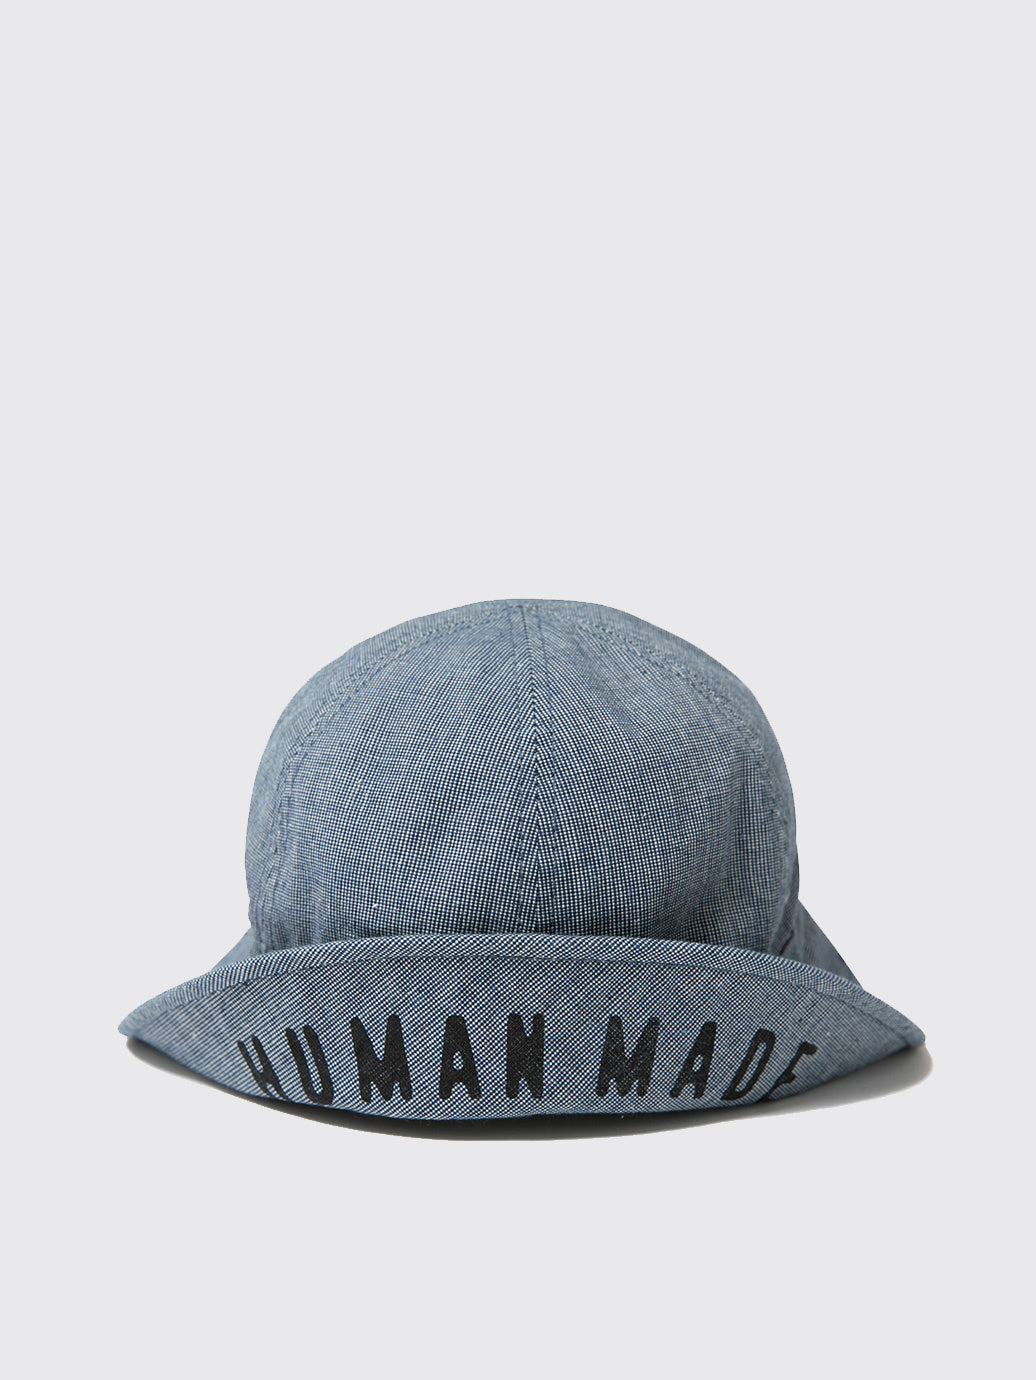 Human Made Round Bucket Hat Navy